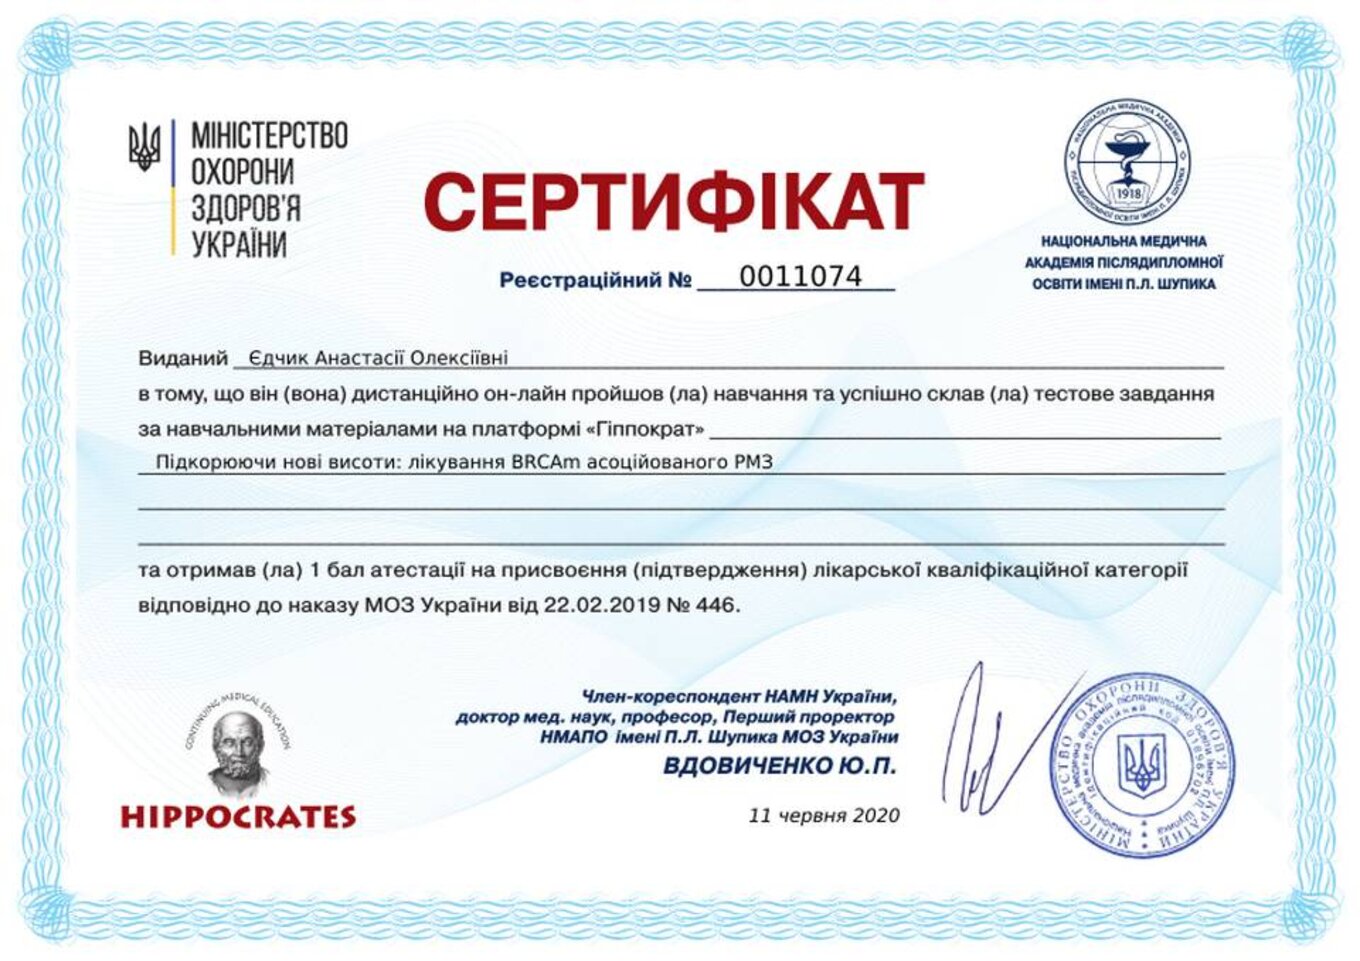 certificates/yedchik-anastasiya-oleksiyivna/erc-edchik-cert-68.jpg